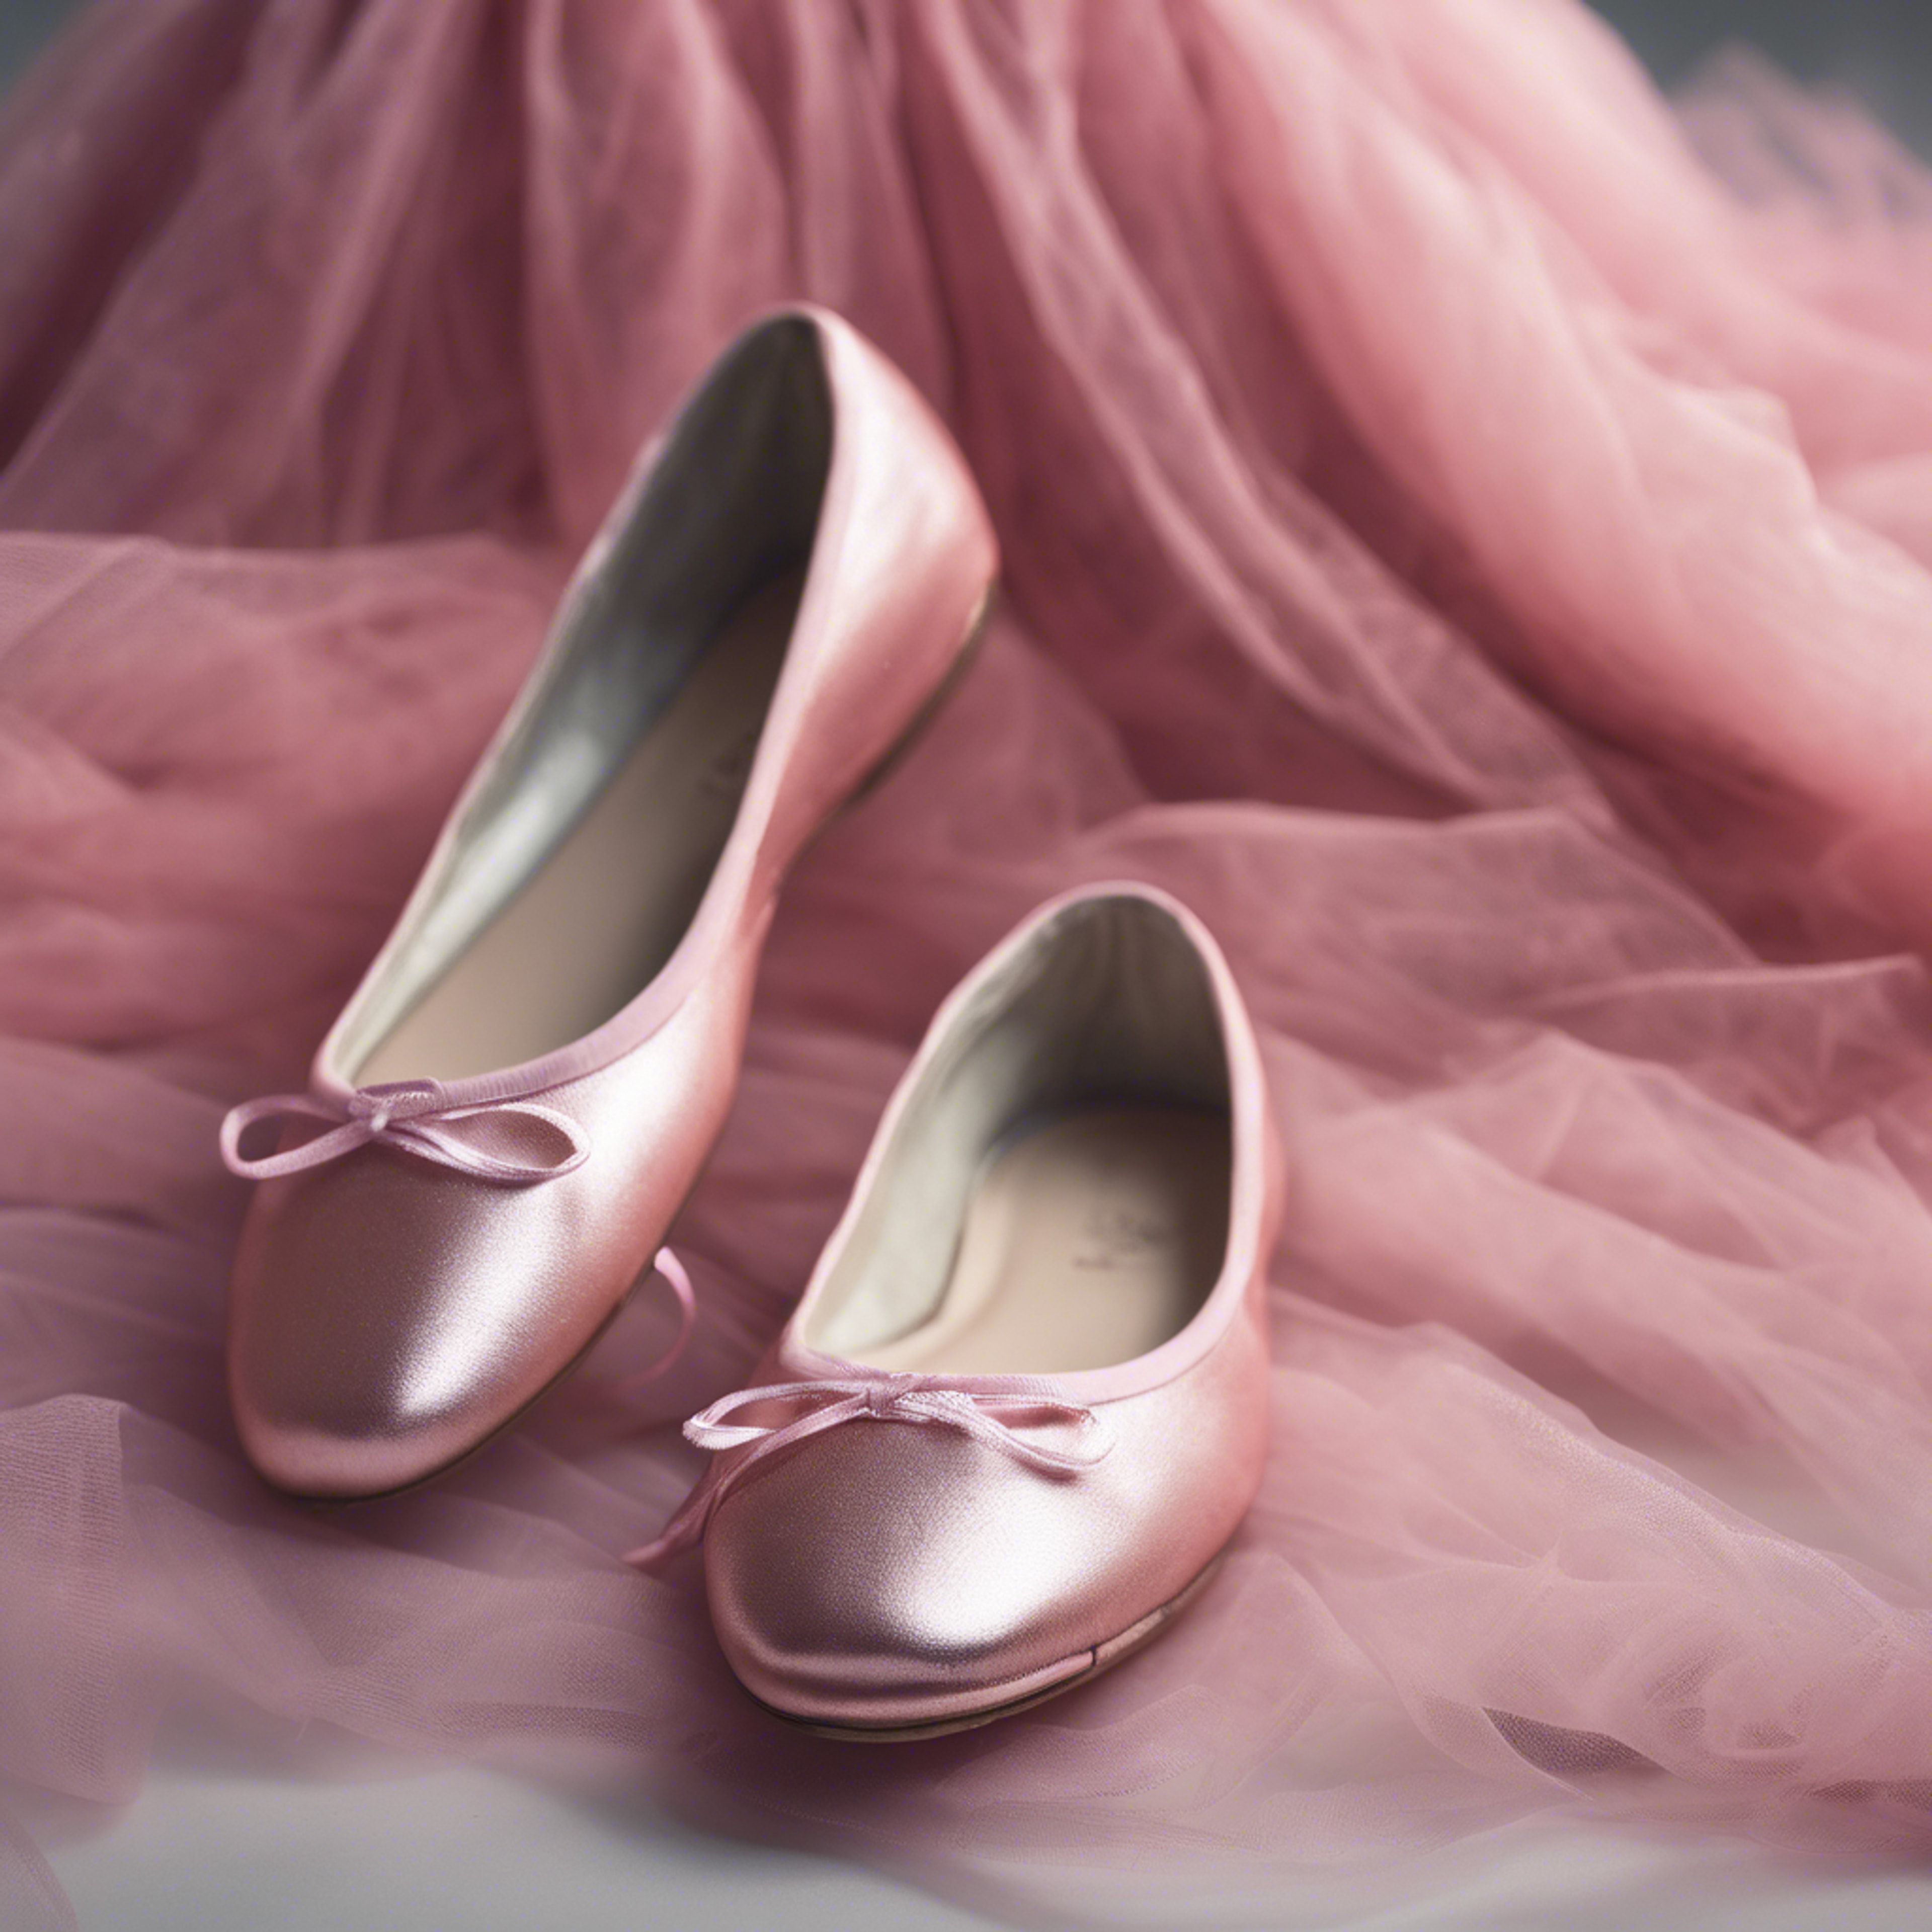 A pair of shiny ballet flats next to a pink tulle ballet skirt. Hình nền[61612bb497ed40a6bca1]